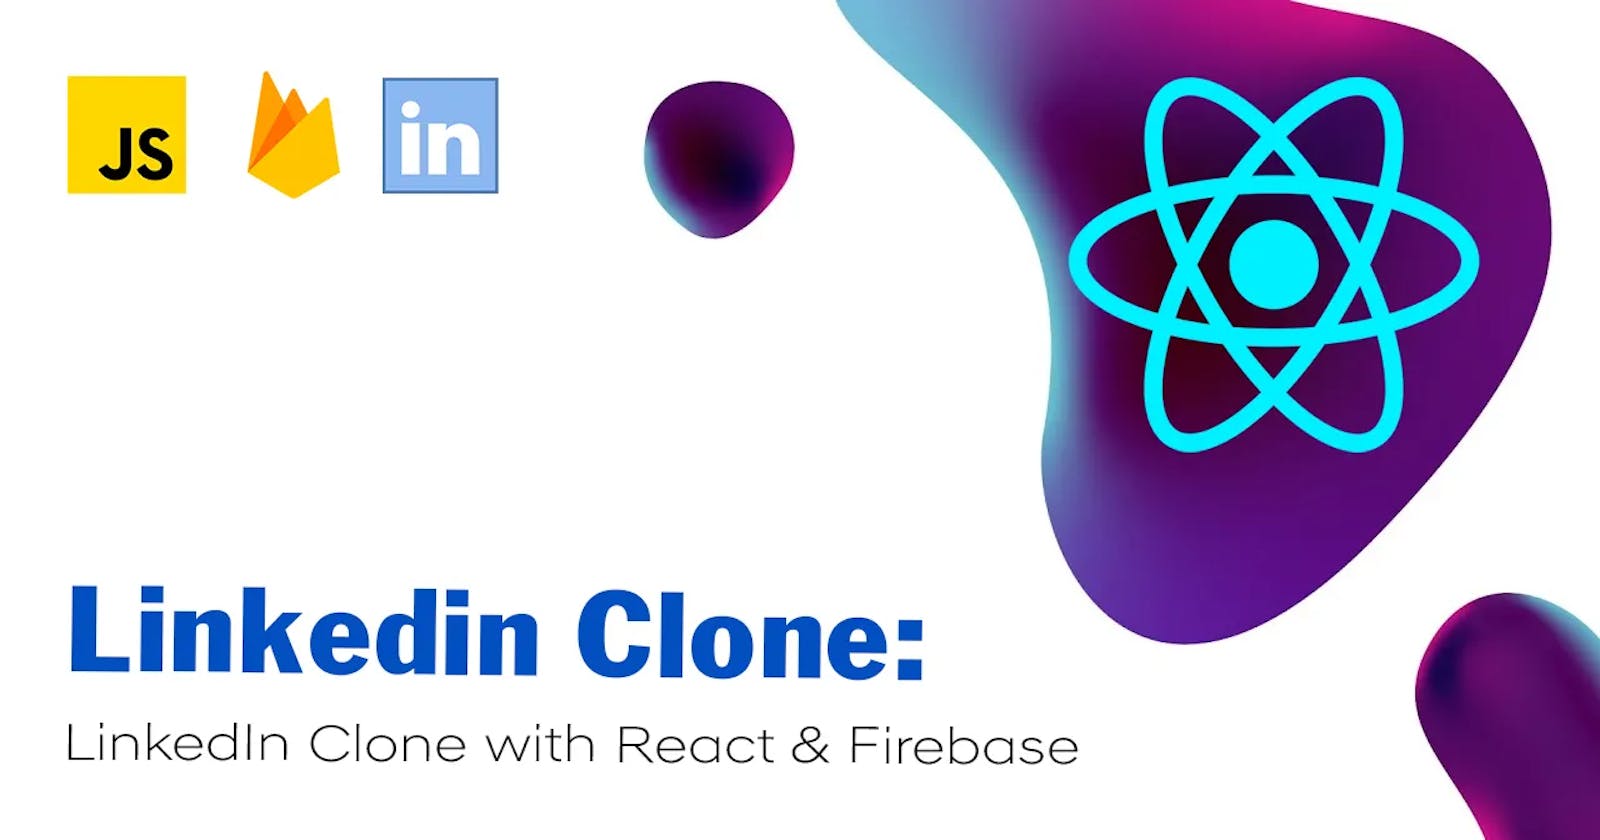 LinkedIn Clone Project Setup